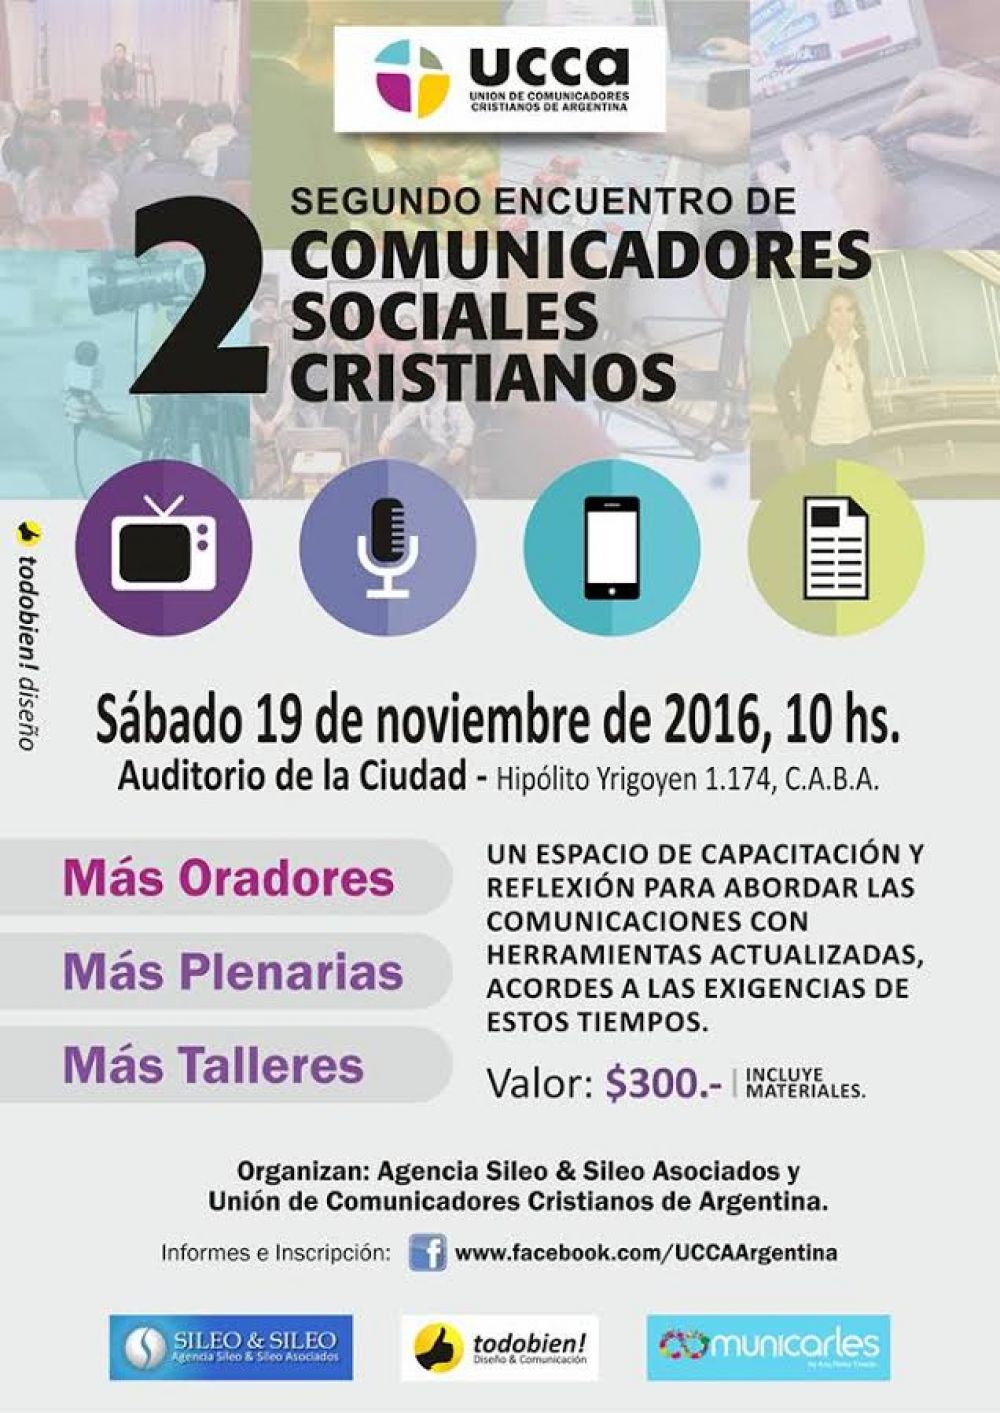 Segundo Encuentro de Comunicadores Cristianos en Buenos Aires